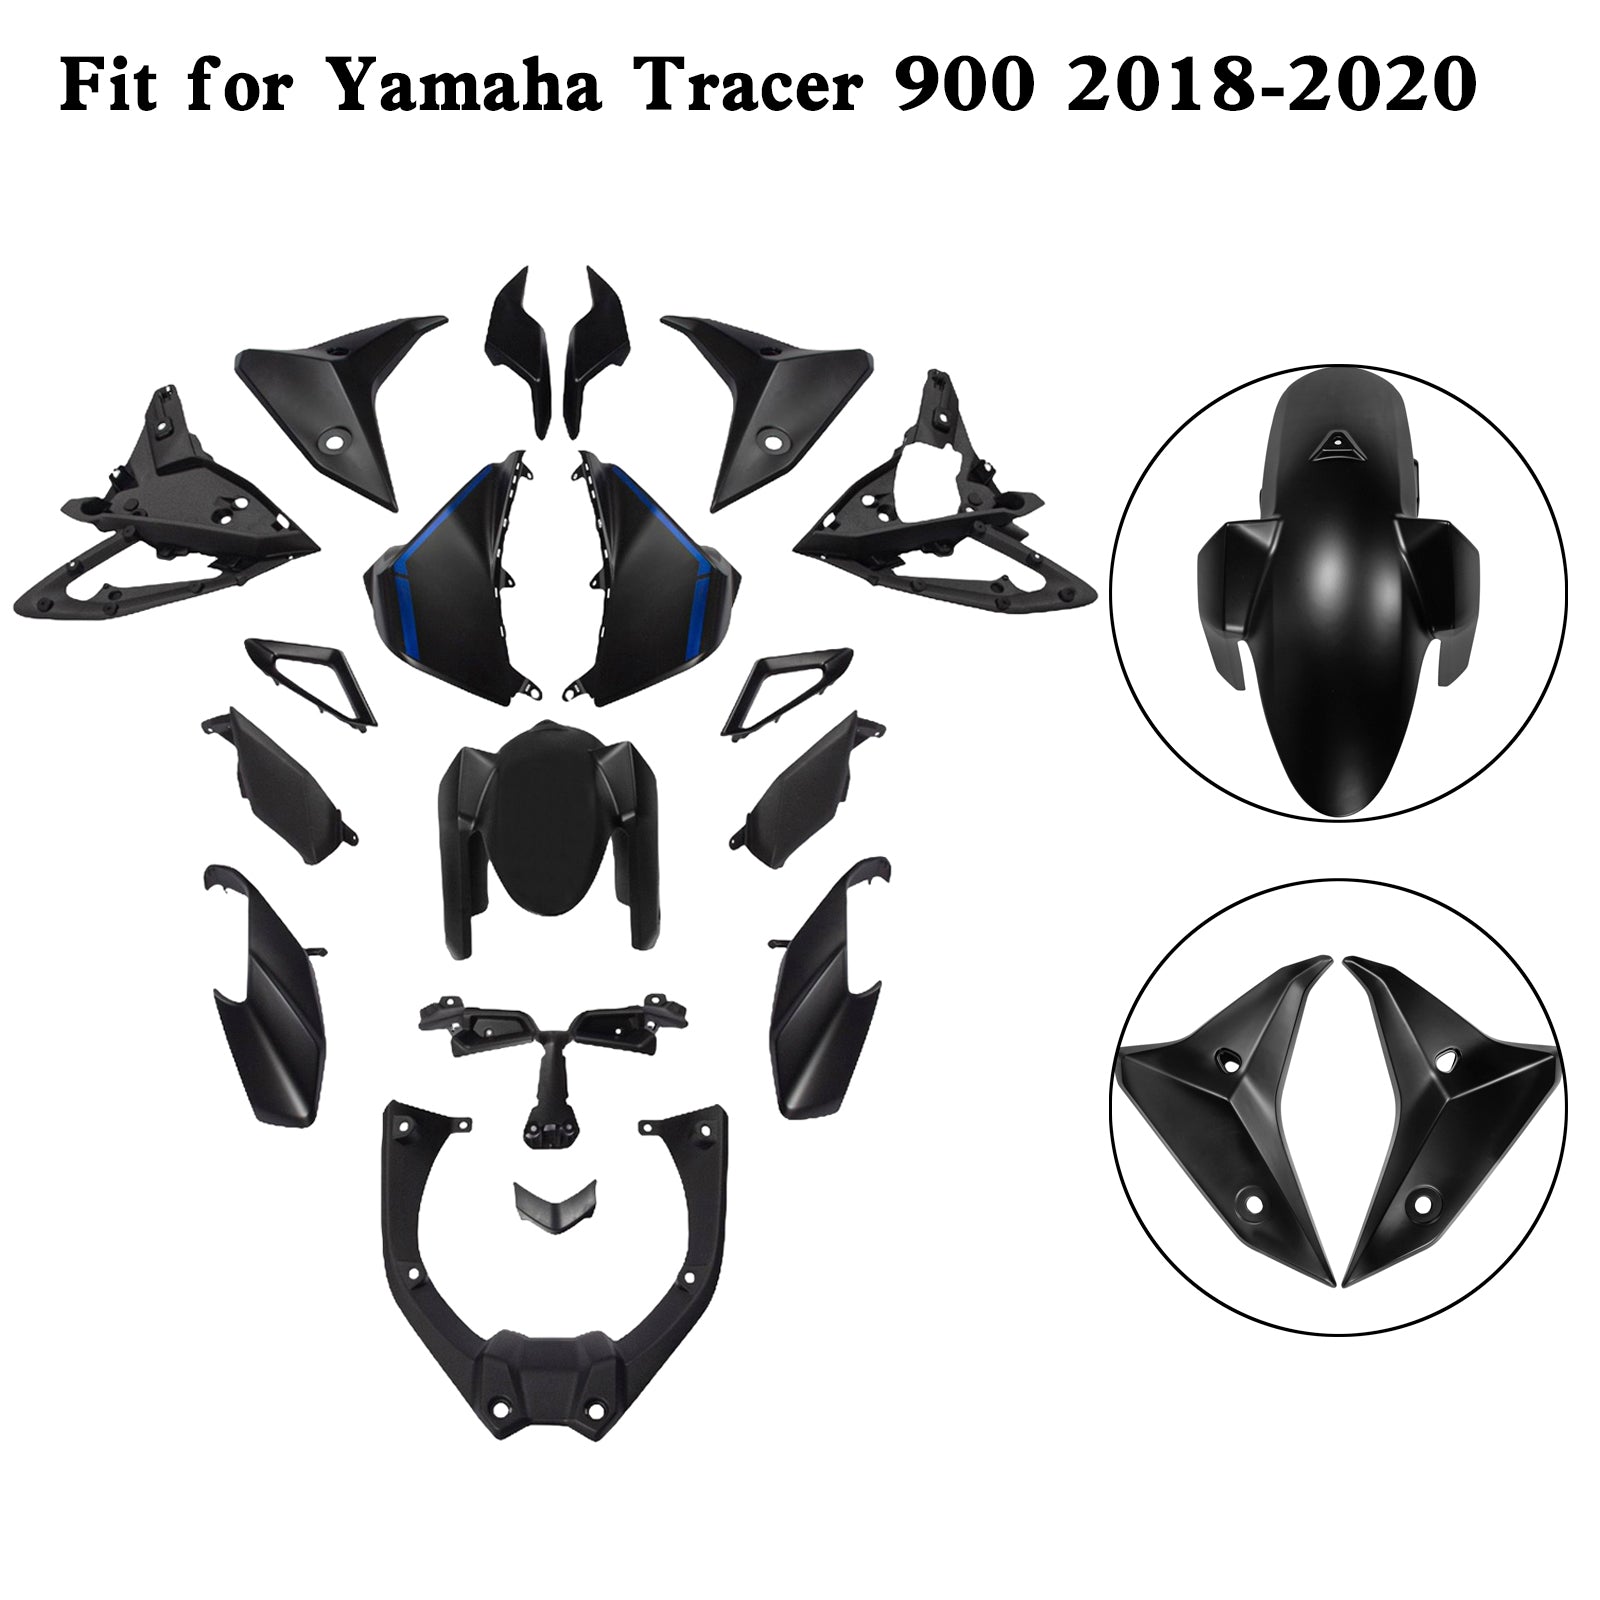 Kit carena Amotopart Yamaha 2018-2020 Tracer 900